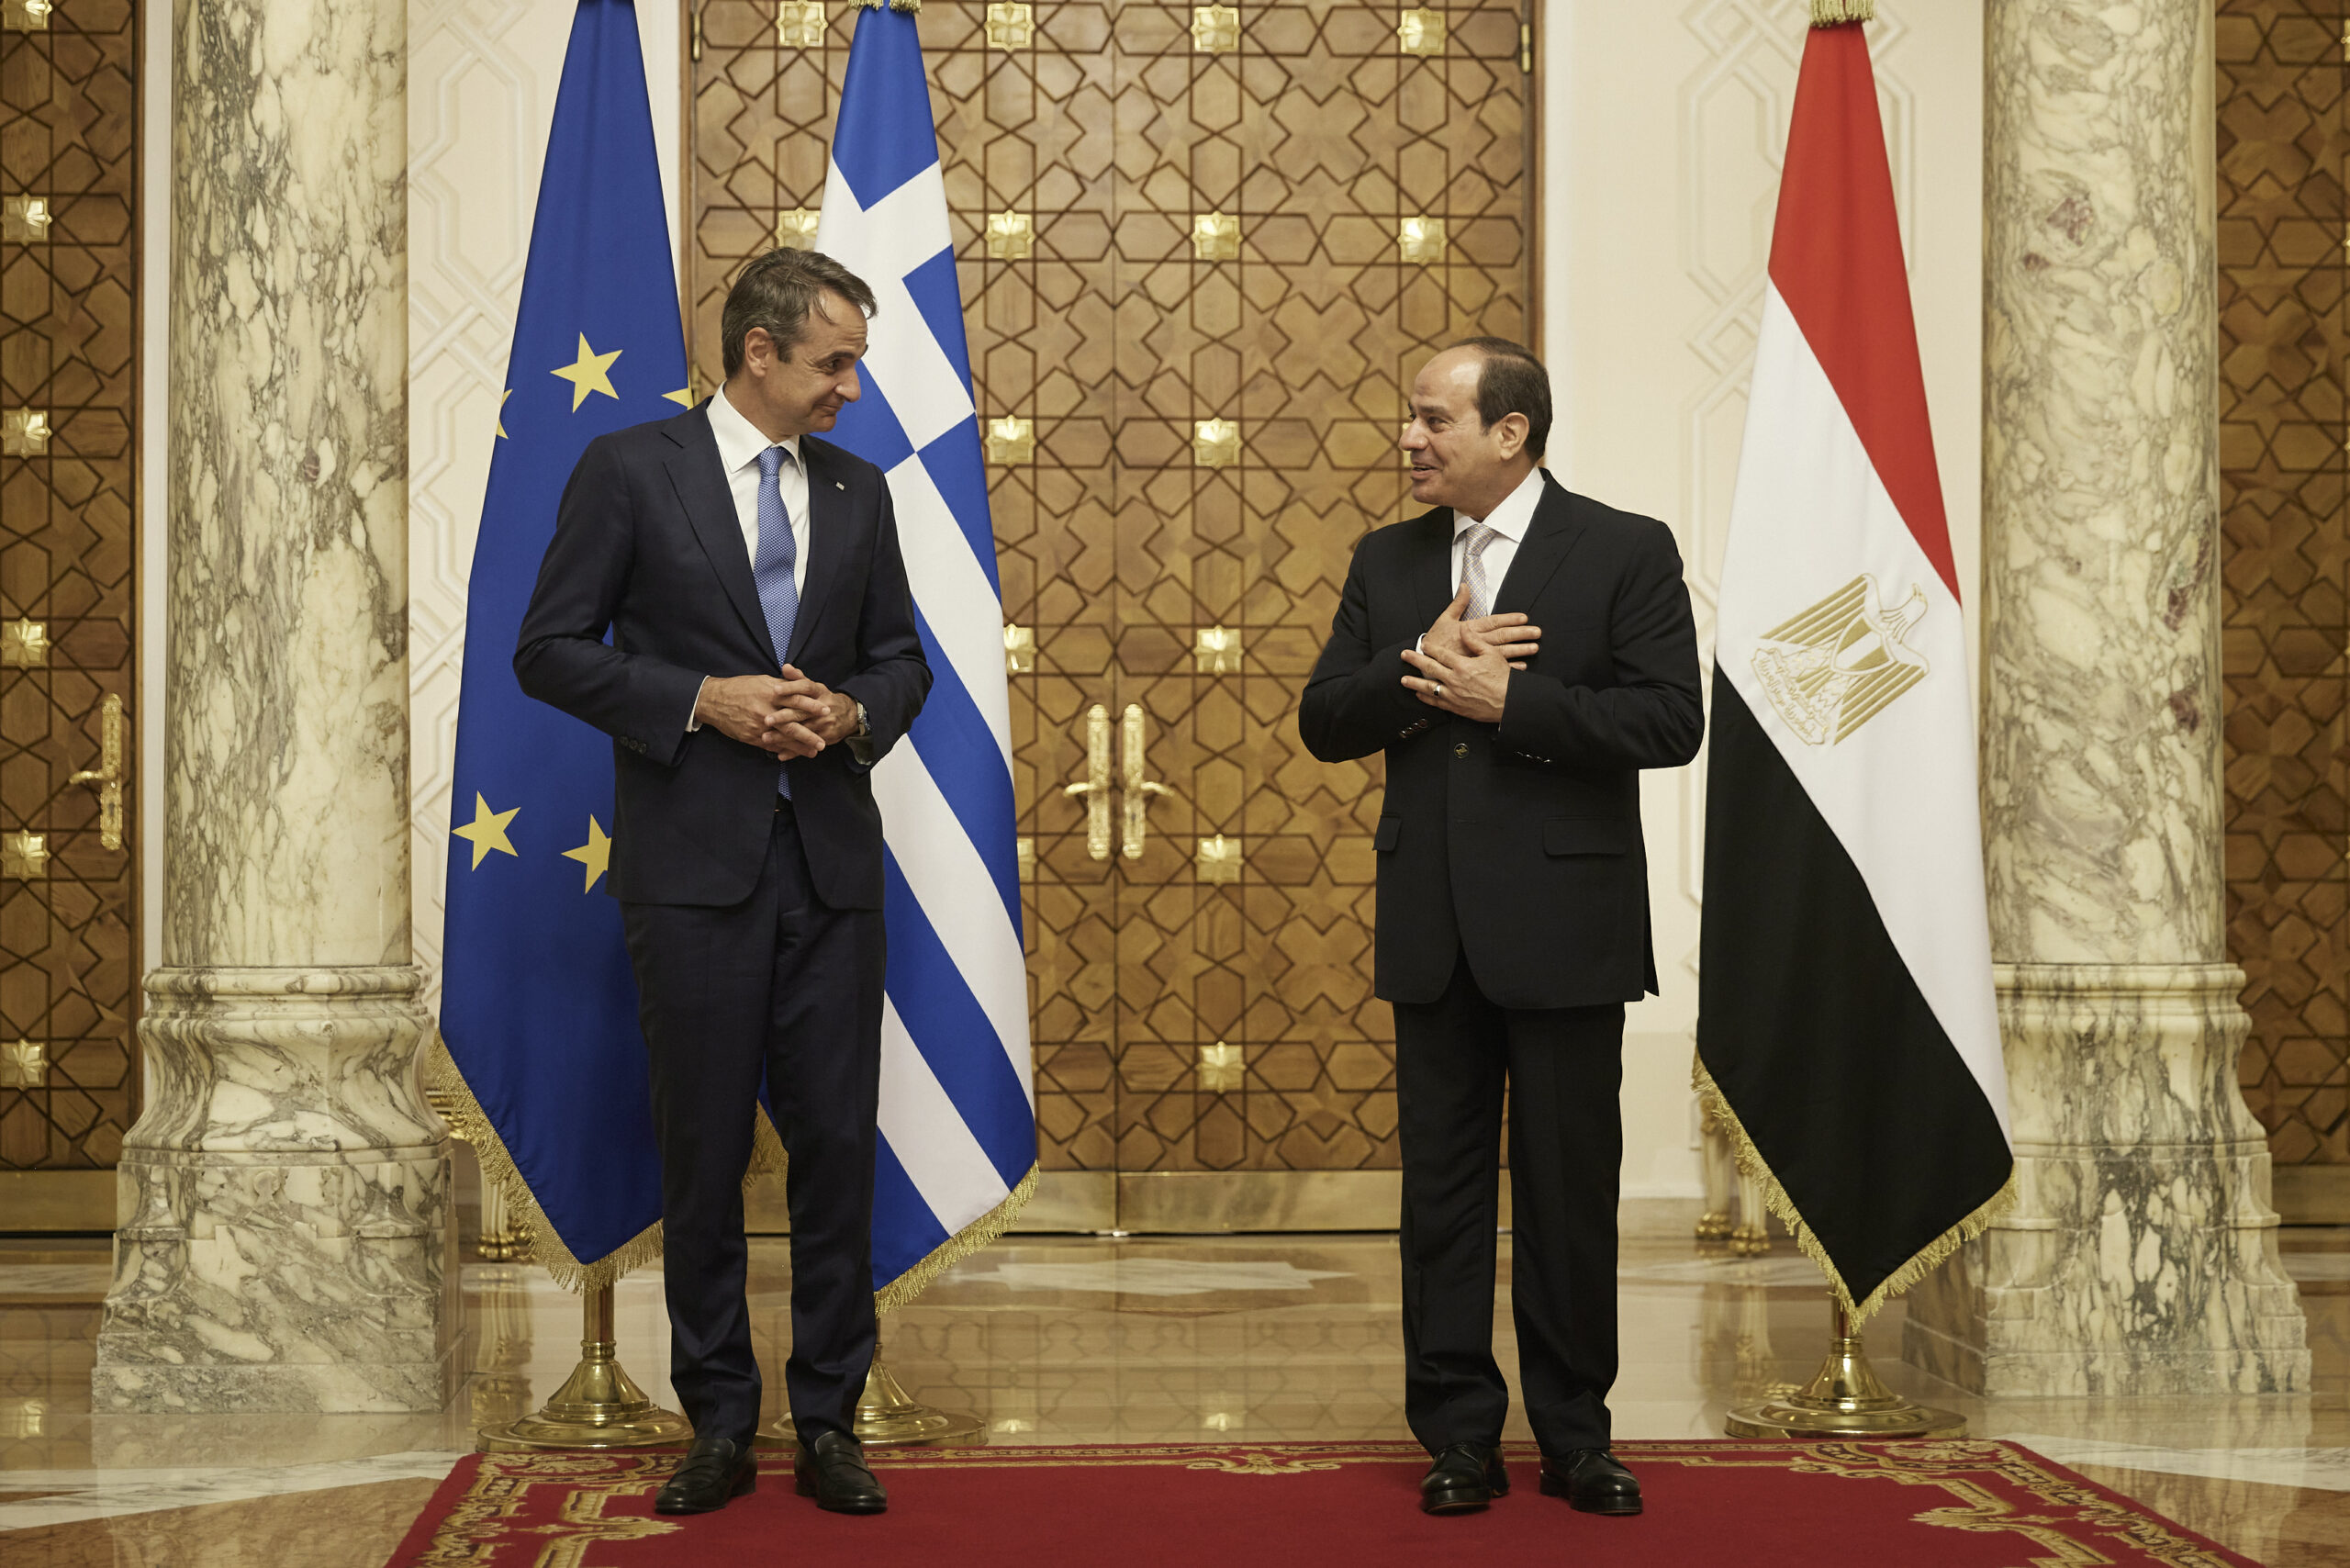 Μητσοτάκης σε Σίσι: Αίγυπτος και Ελλάδα υπηρετούν αταλάντευτα κοινές αρχές,  τη σταθερότητα και την ασφάλεια στην Αν. Μεσόγειο